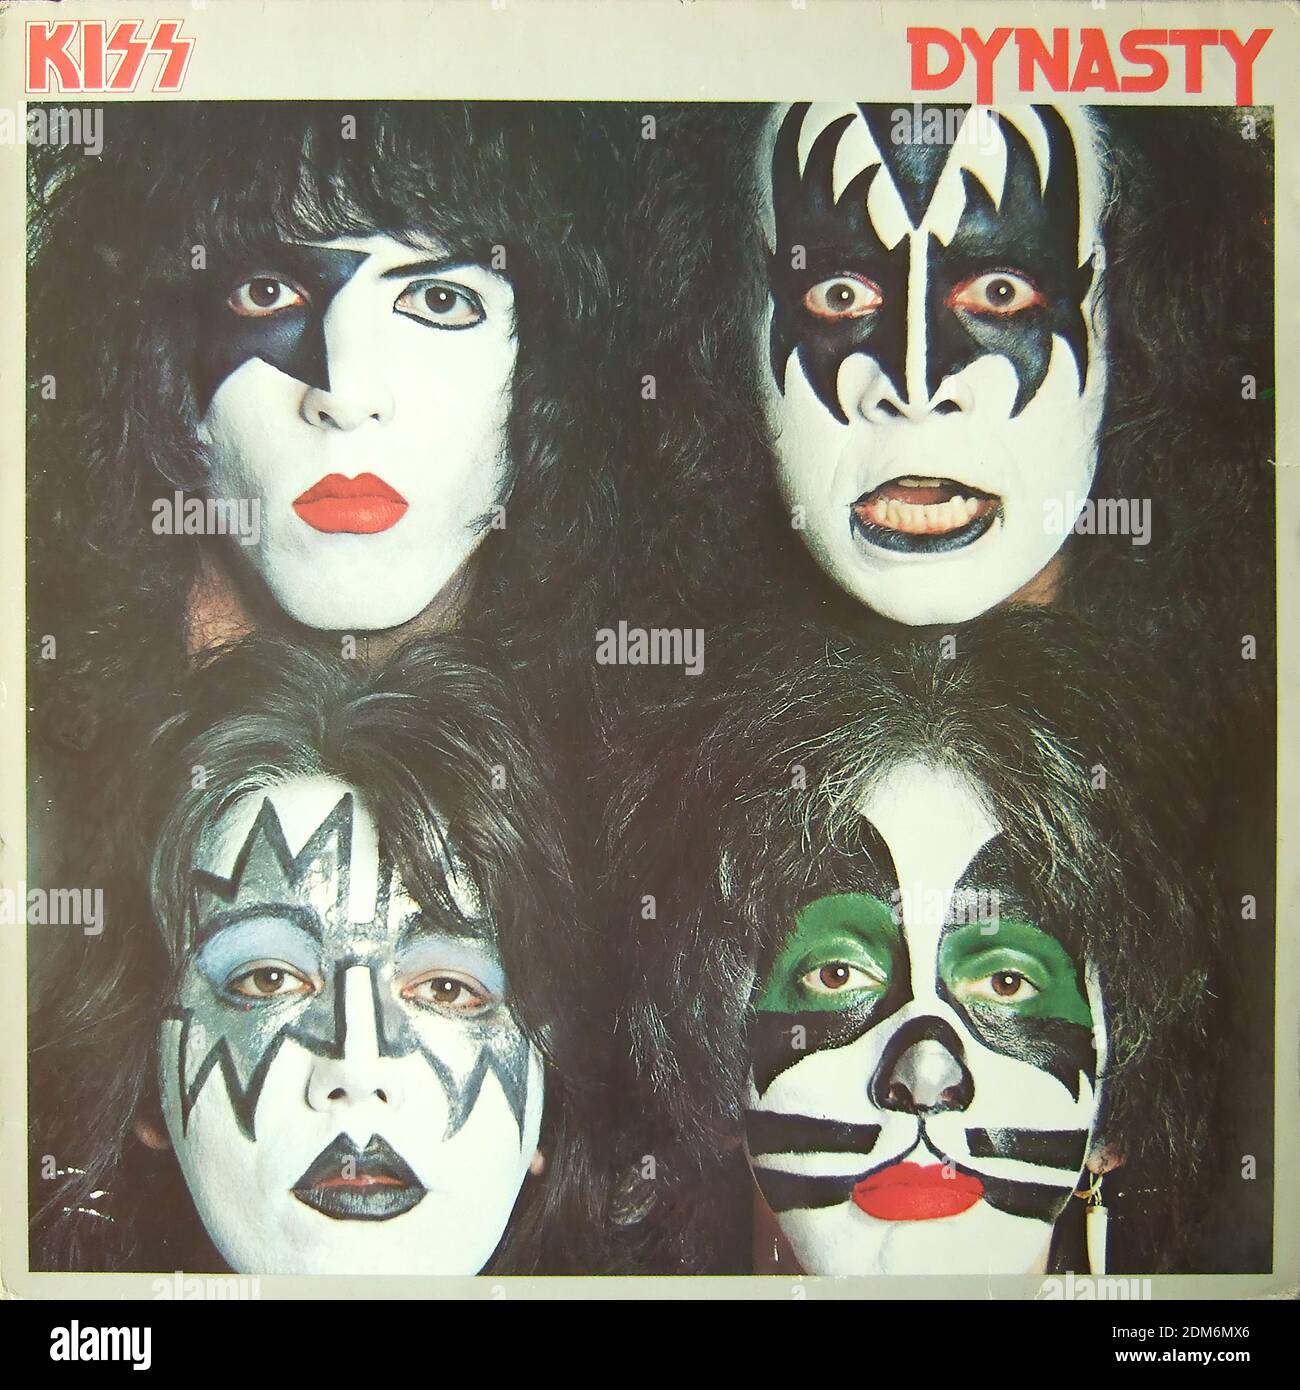 Kiss - Dynasty - copertina di album in vinile d'epoca Foto stock - Alamy